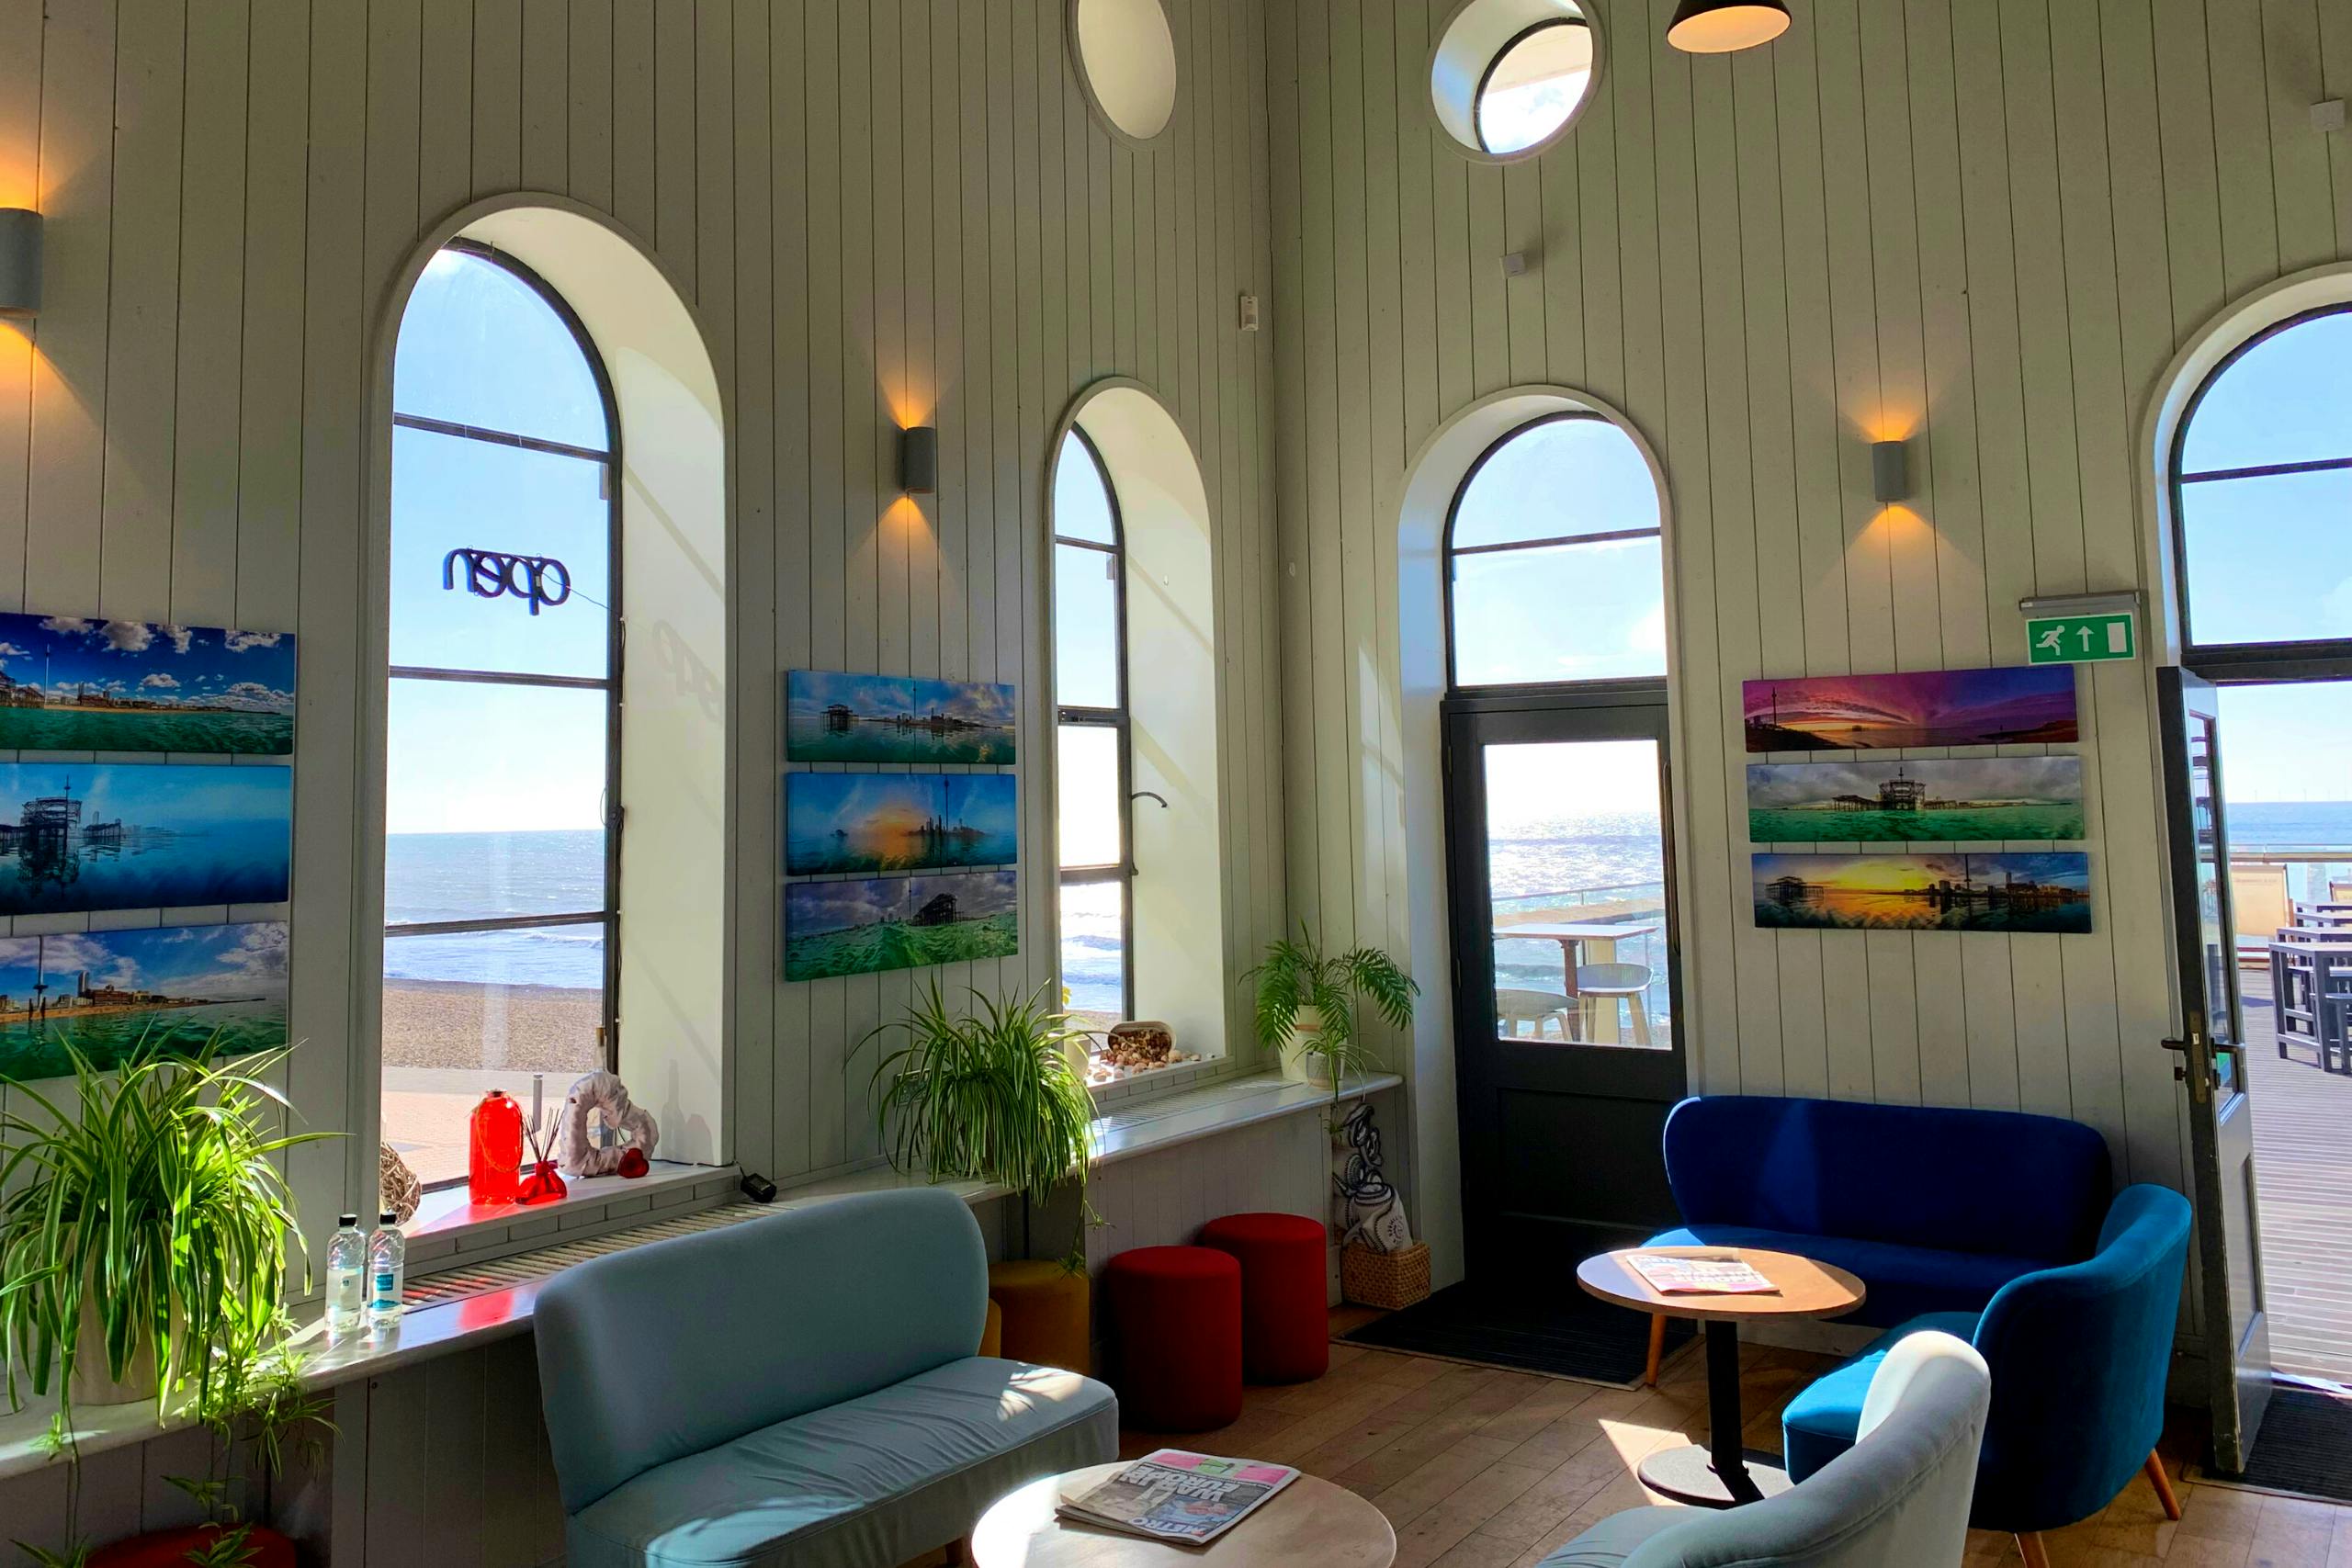 West Beach cafe bar interior